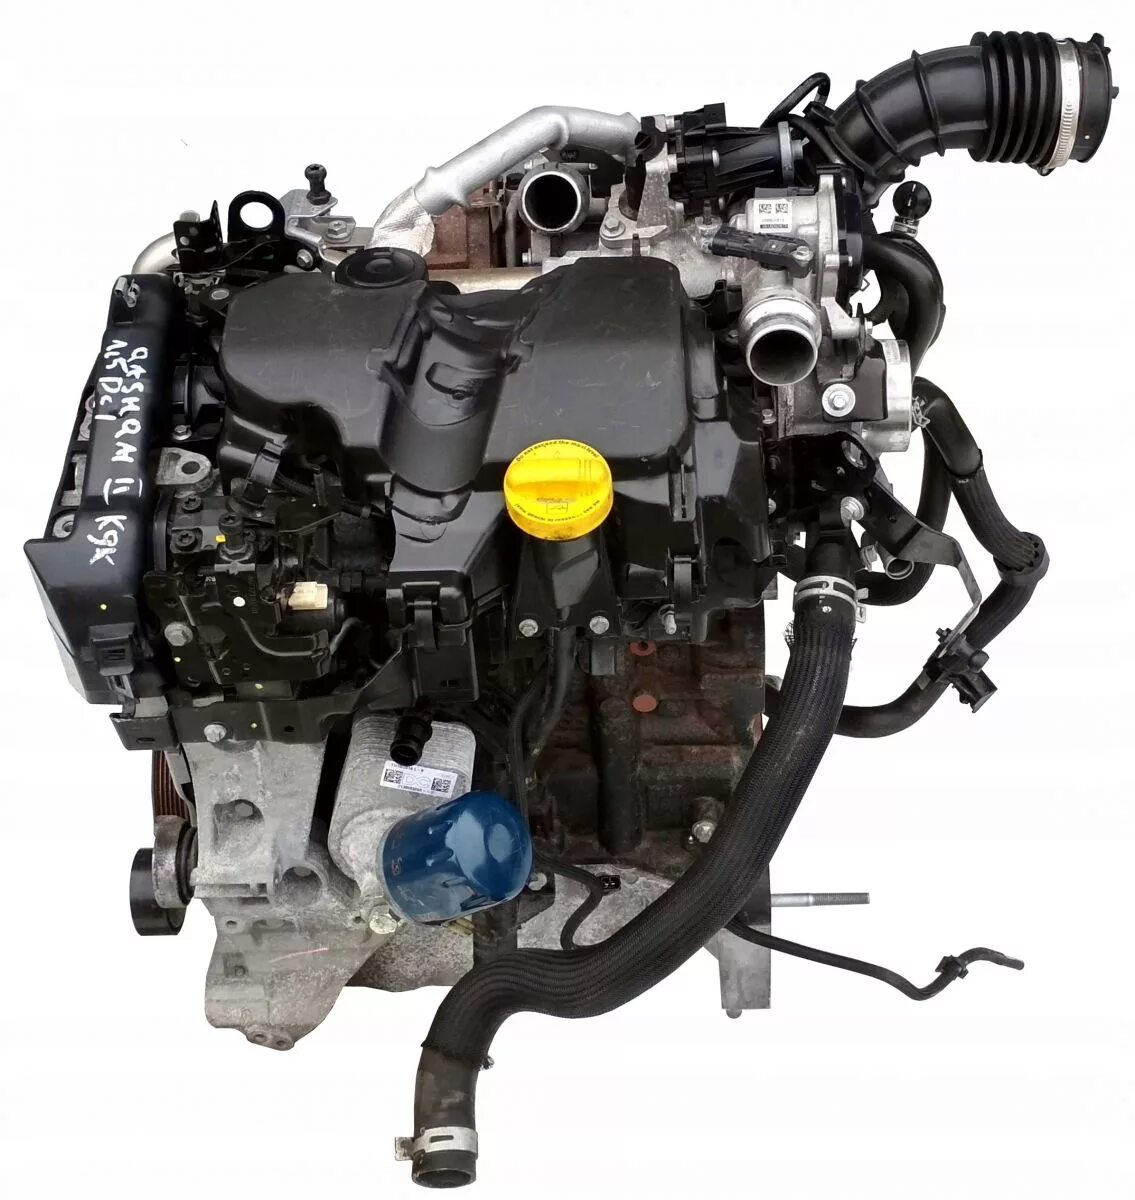 Renault 5 двигатель. Двигатель Рено Дастер 1.5 дизель. Renault k9k 1.5 DCI. Двигатель Рено DCI 1.5 дизель. Дизельный двигатель Рено Дастер 1.5 DCI.